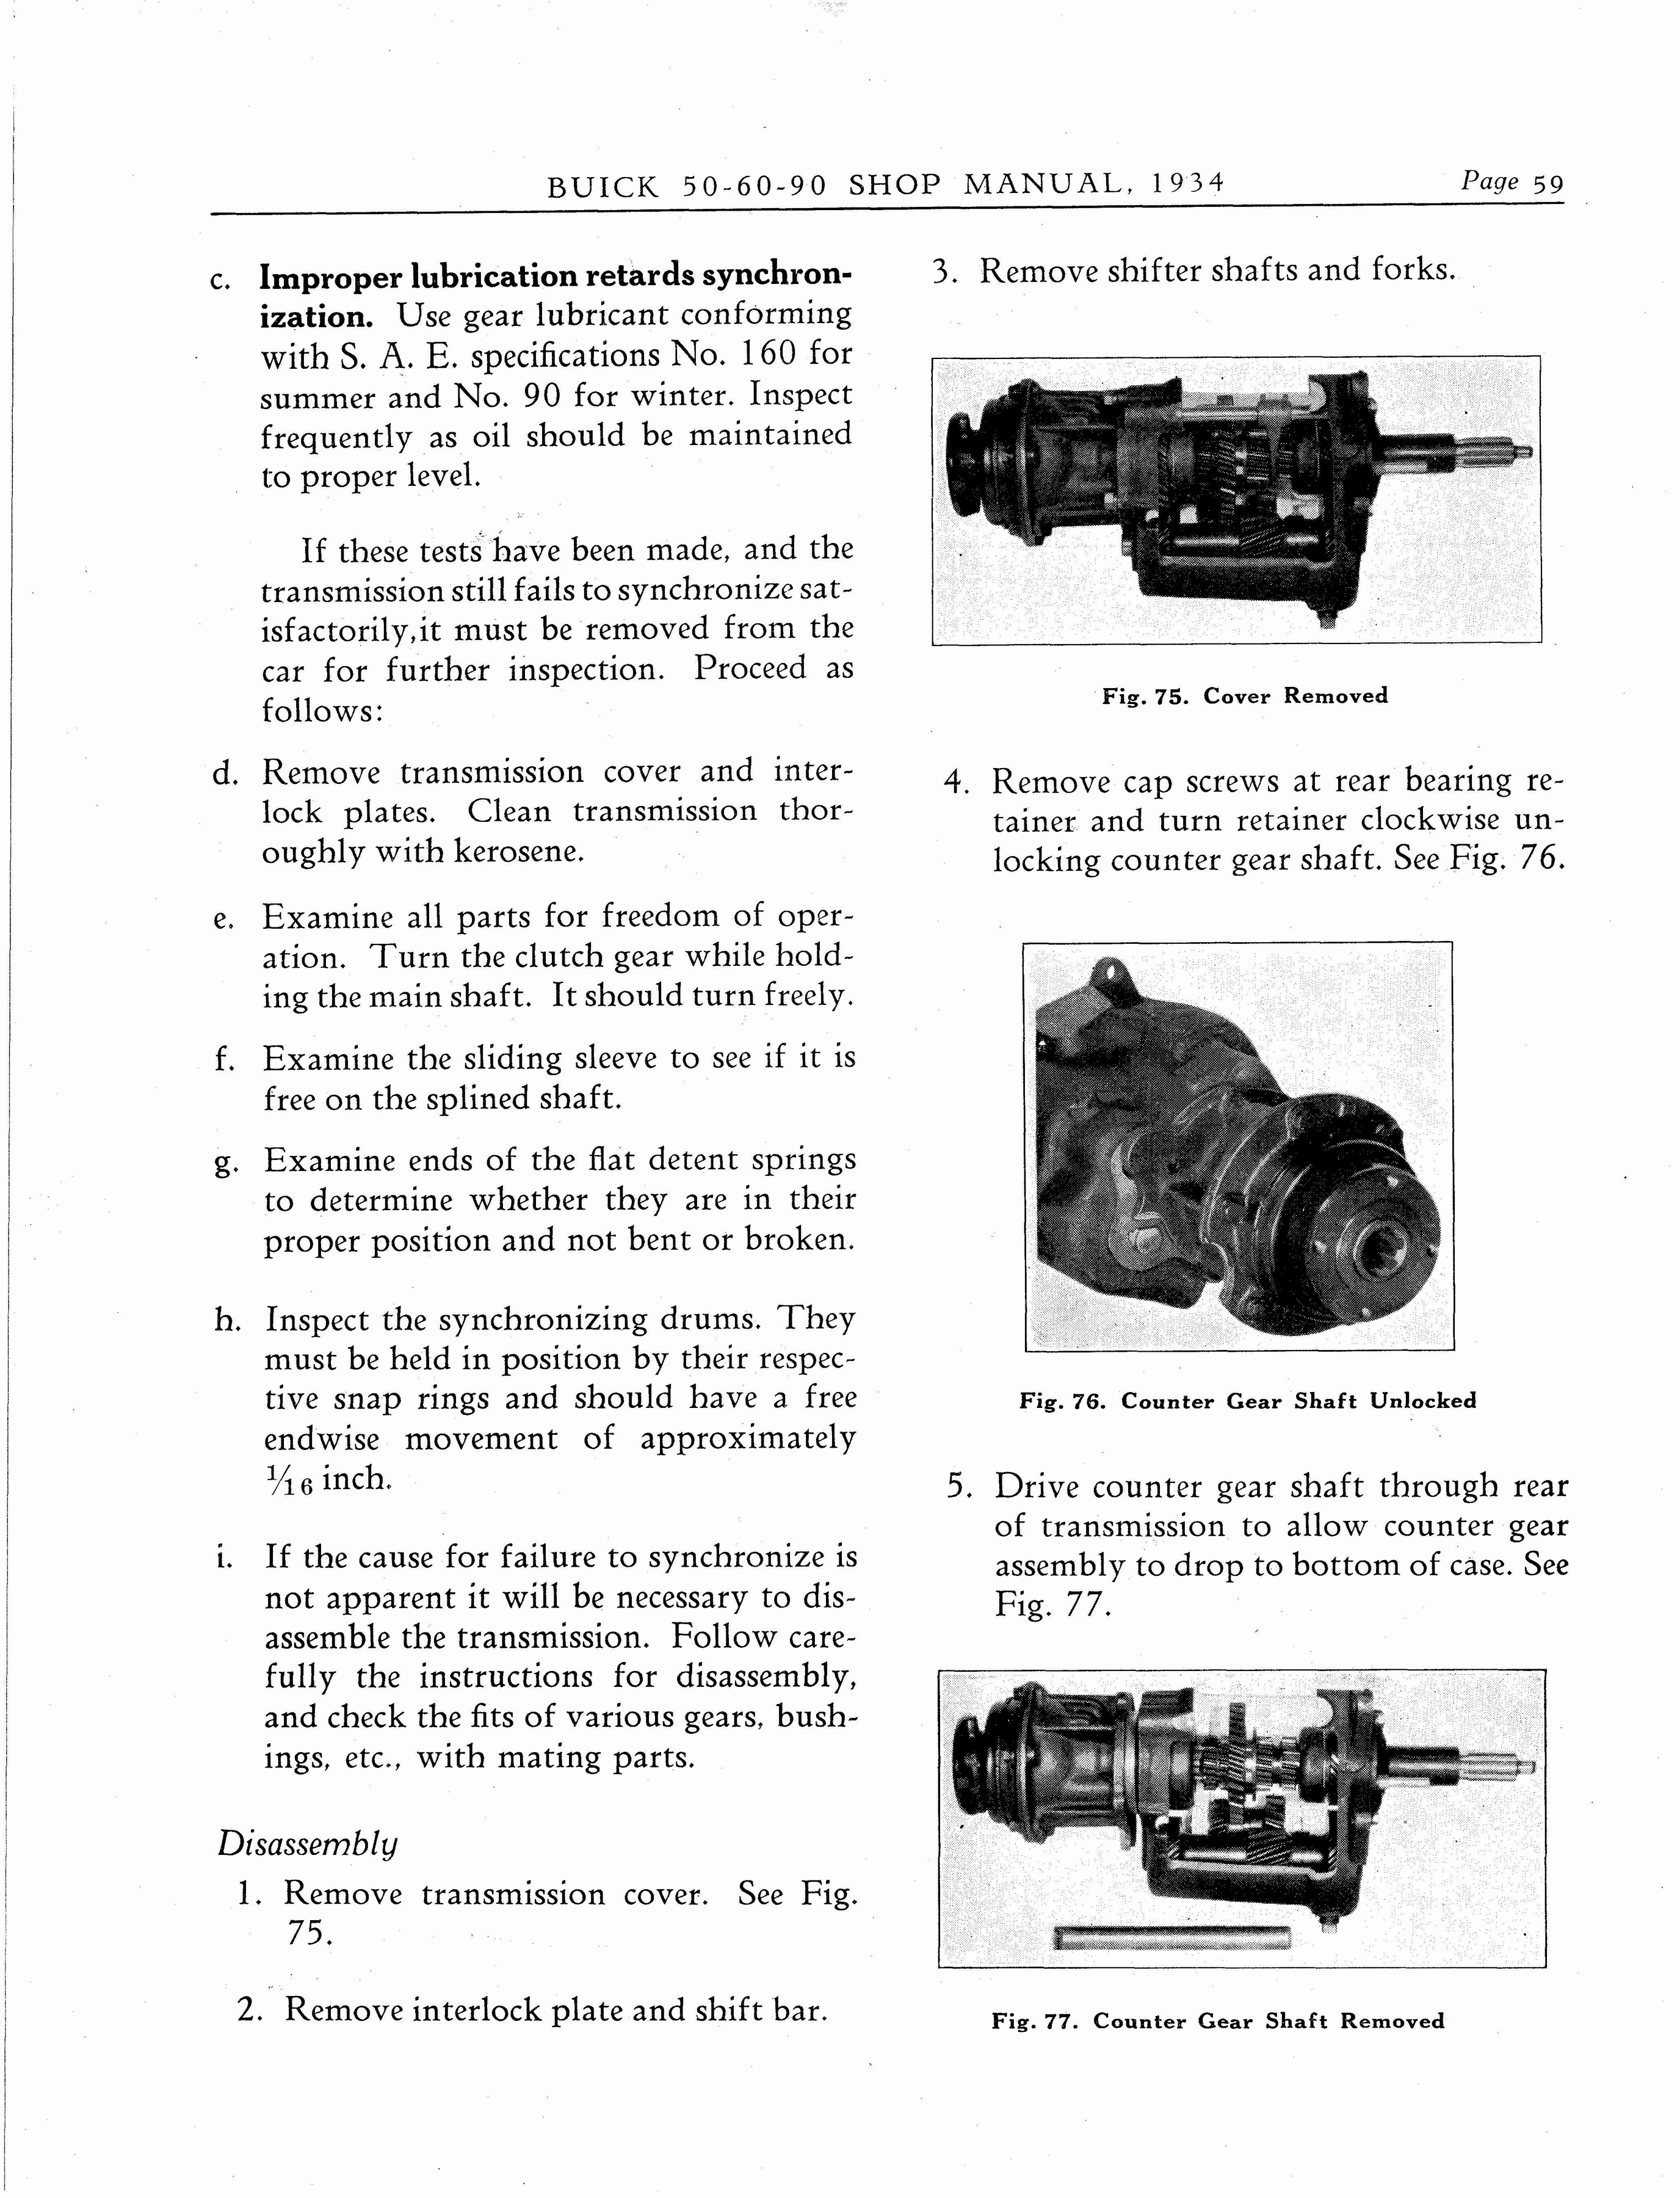 n_1934 Buick Series 50-60-90 Shop Manual_Page_060.jpg